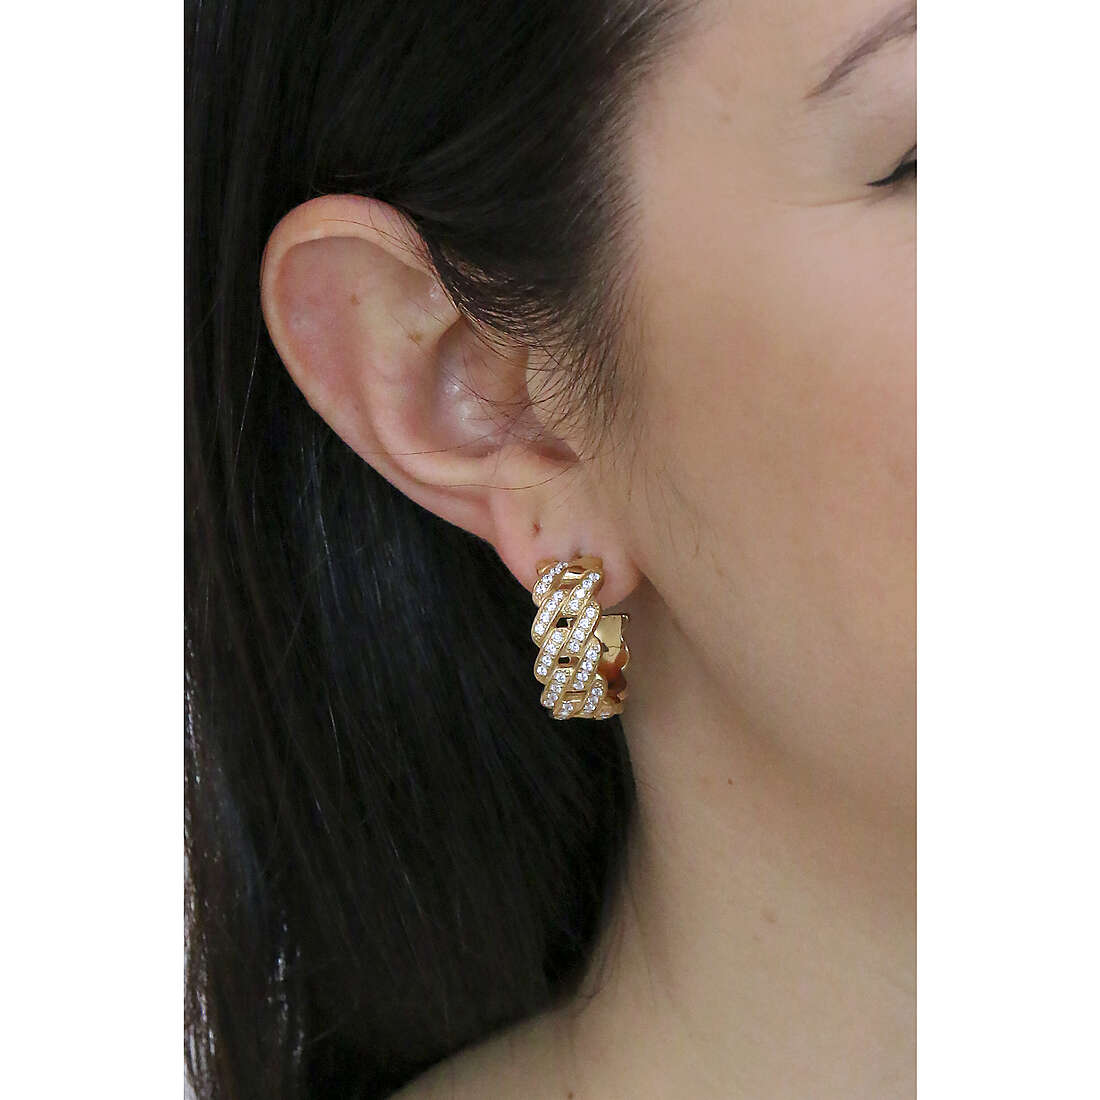 Bliss earrings Royale woman 20090111 wearing